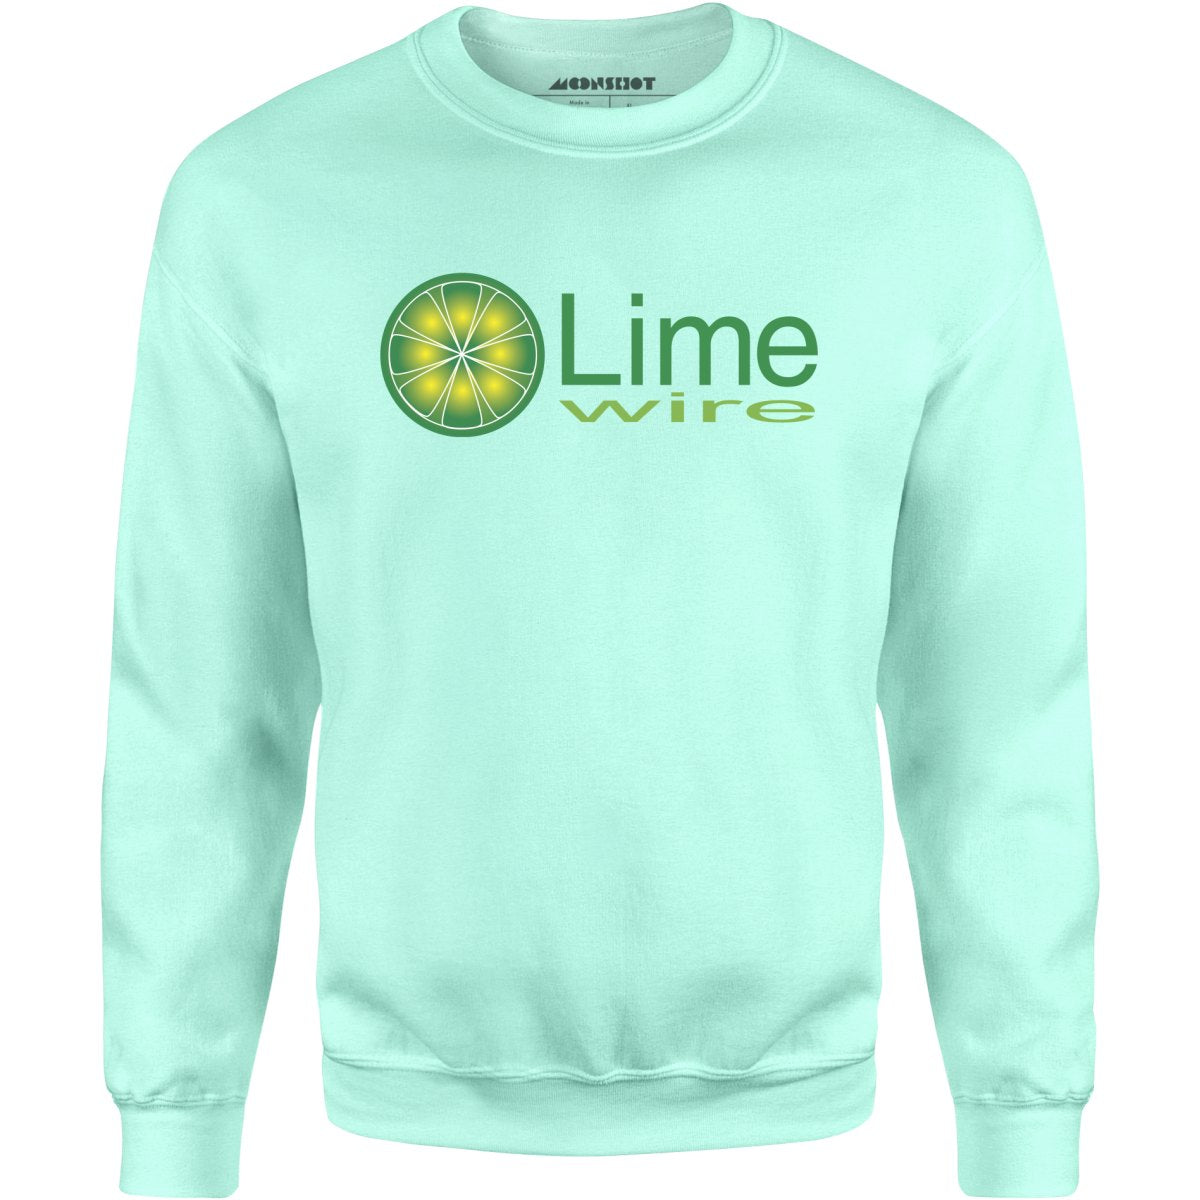 LimeWire - Vintage Internet - Unisex Sweatshirt